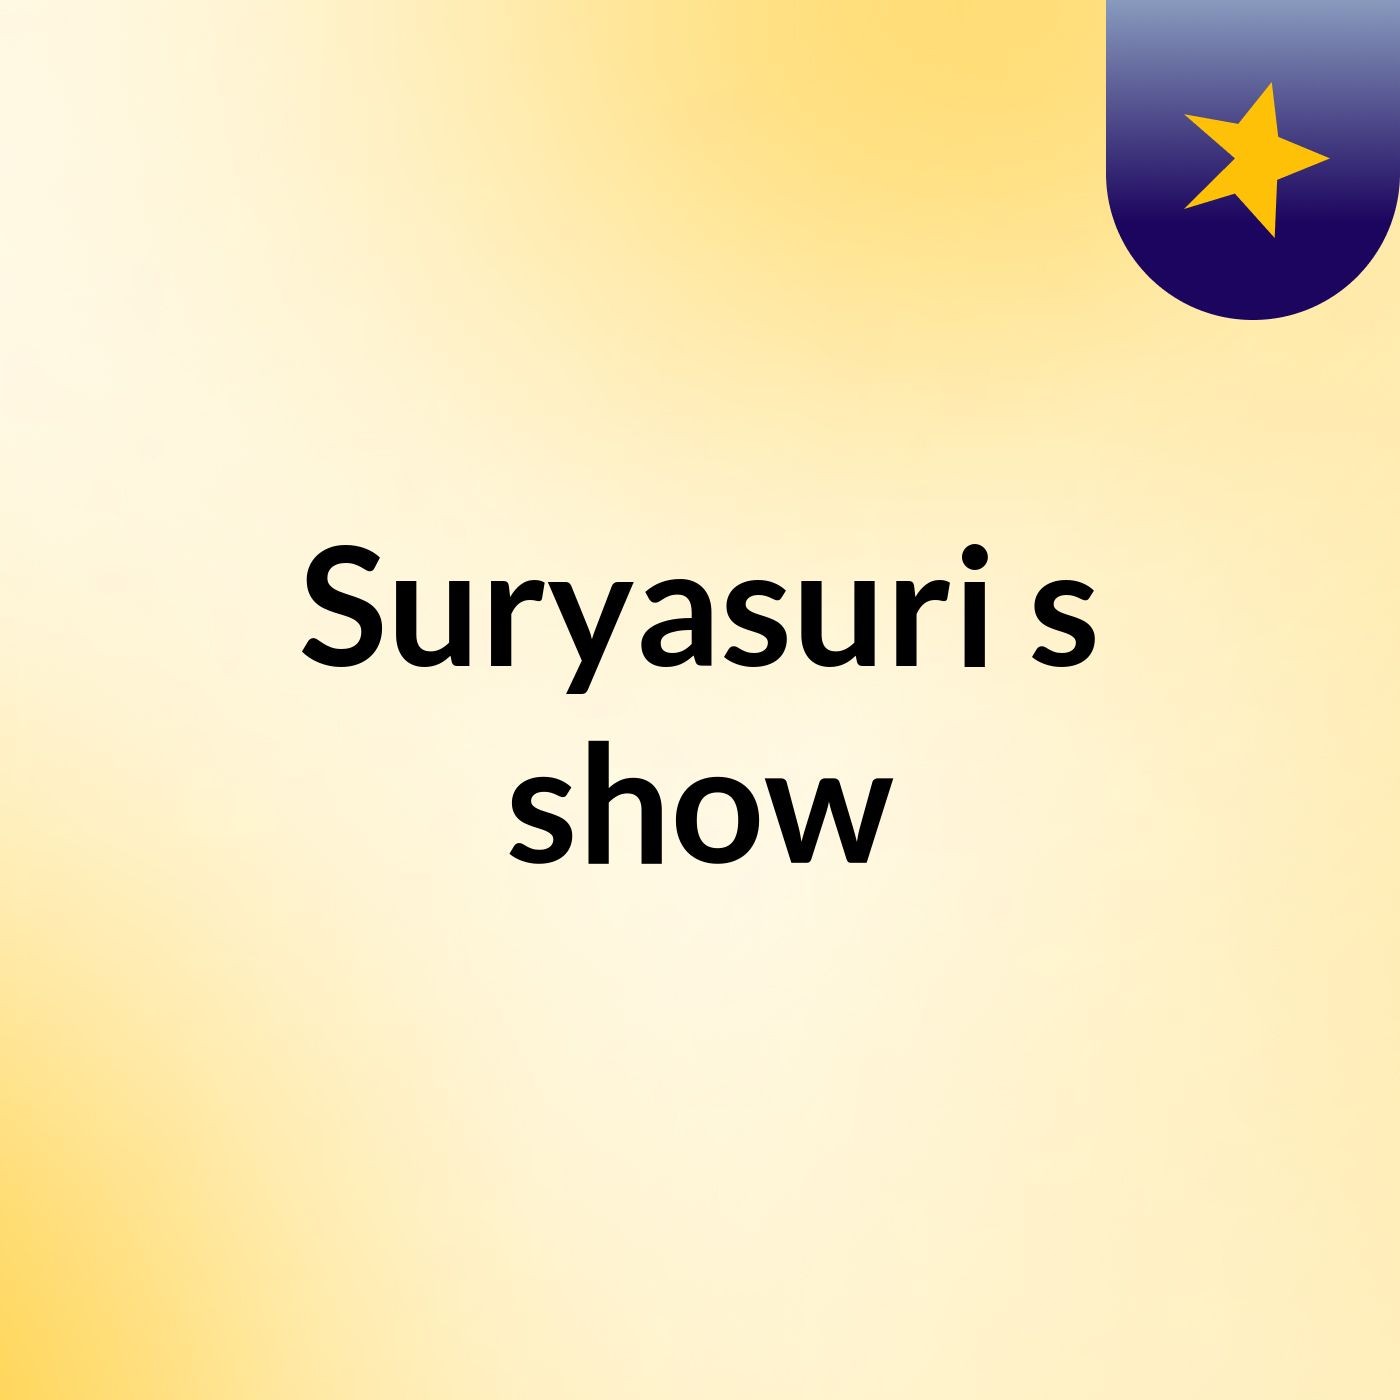 Suryasuri's show